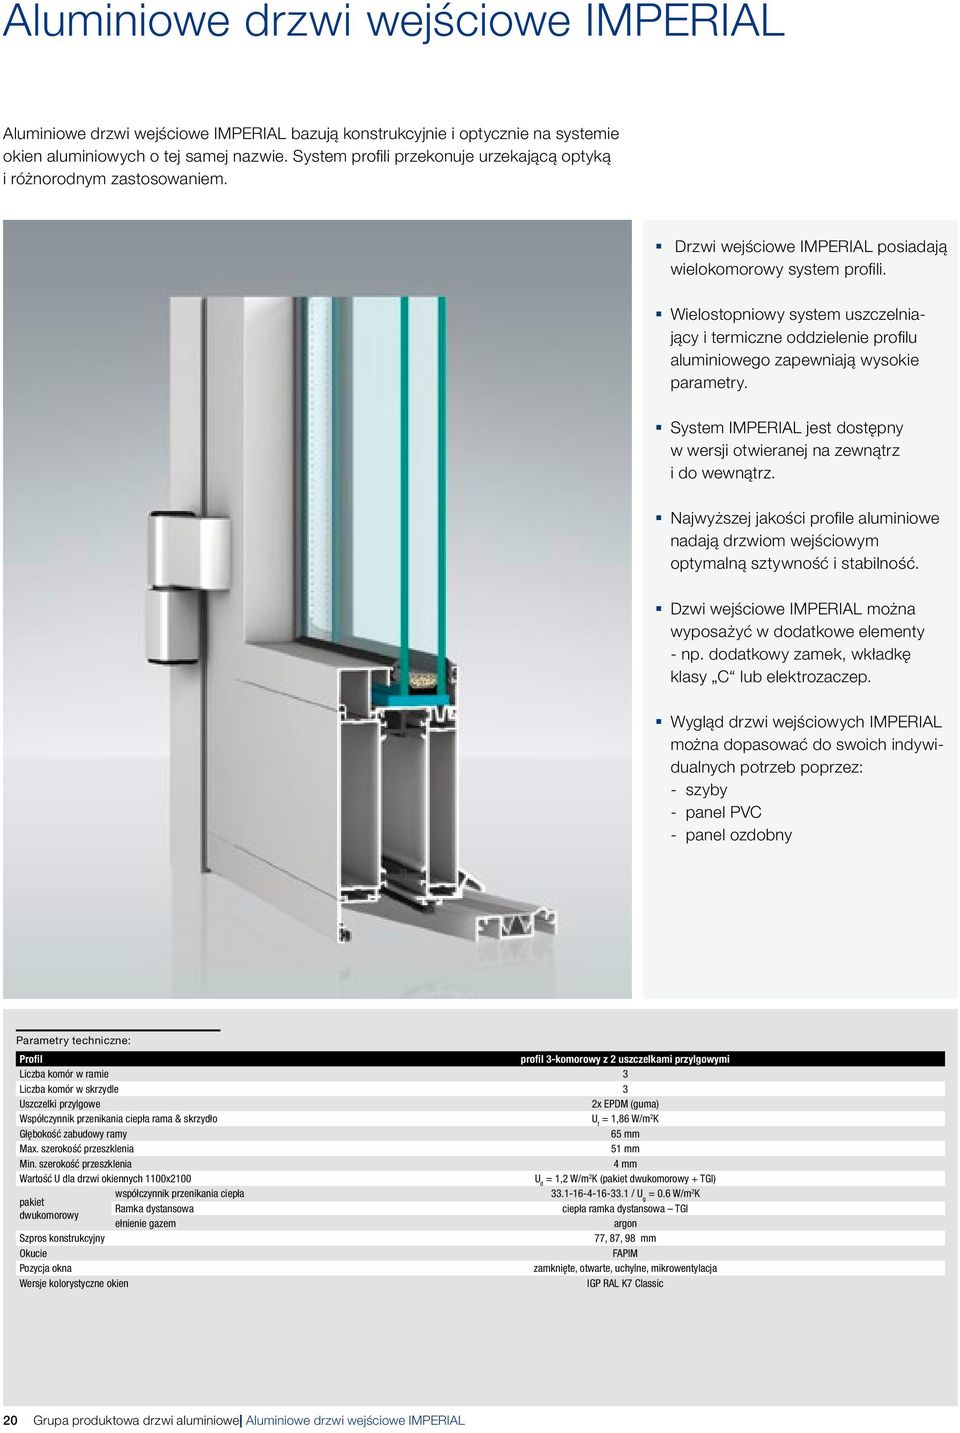 Wielostopniowy system uszczelniający i termiczne oddzielenie profilu aluminioweo zapewniają wysokie parametry. System IMPERIAL jest dostępny w wersji otwieranej na zewnątrz i do wewnątrz.